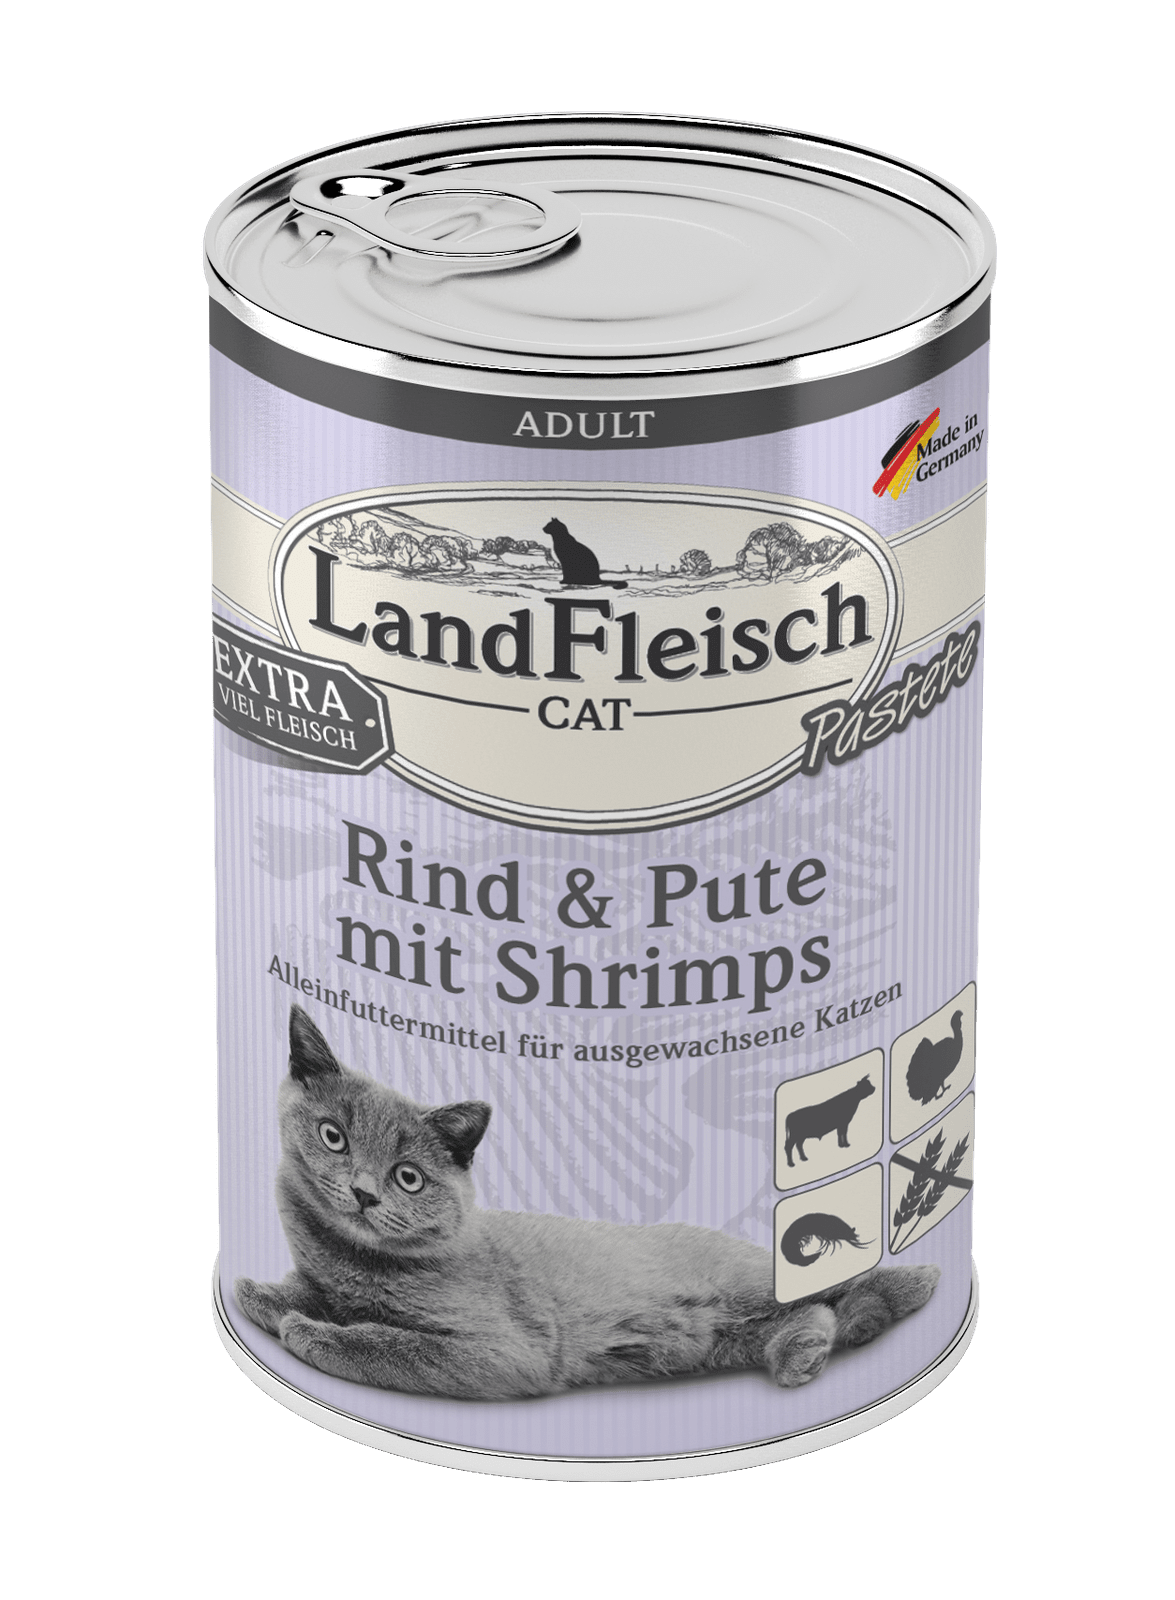 Artikel mit dem Namen LandFleisch Cat Adult Pastete Rind &amp; Pute mit Shrimps im Shop von zoo.de , dem Onlineshop für nachhaltiges Hundefutter und Katzenfutter.